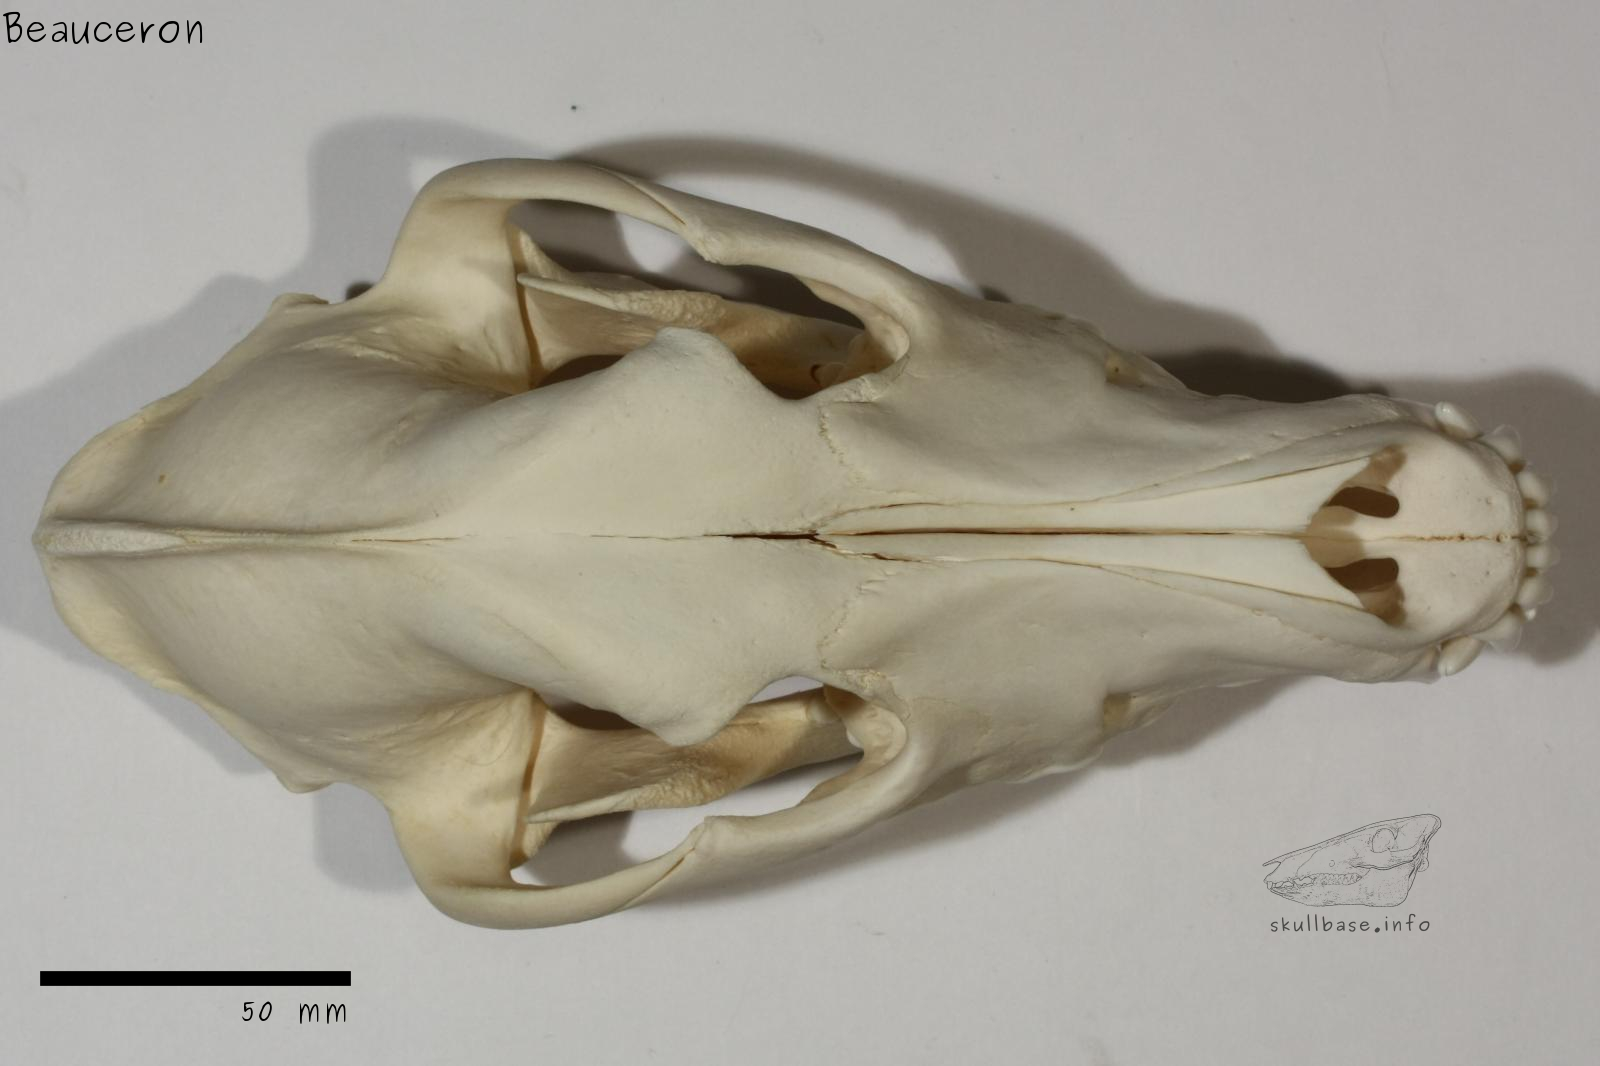 Beauceron (Canis lupus familiaris) skull dorsal view